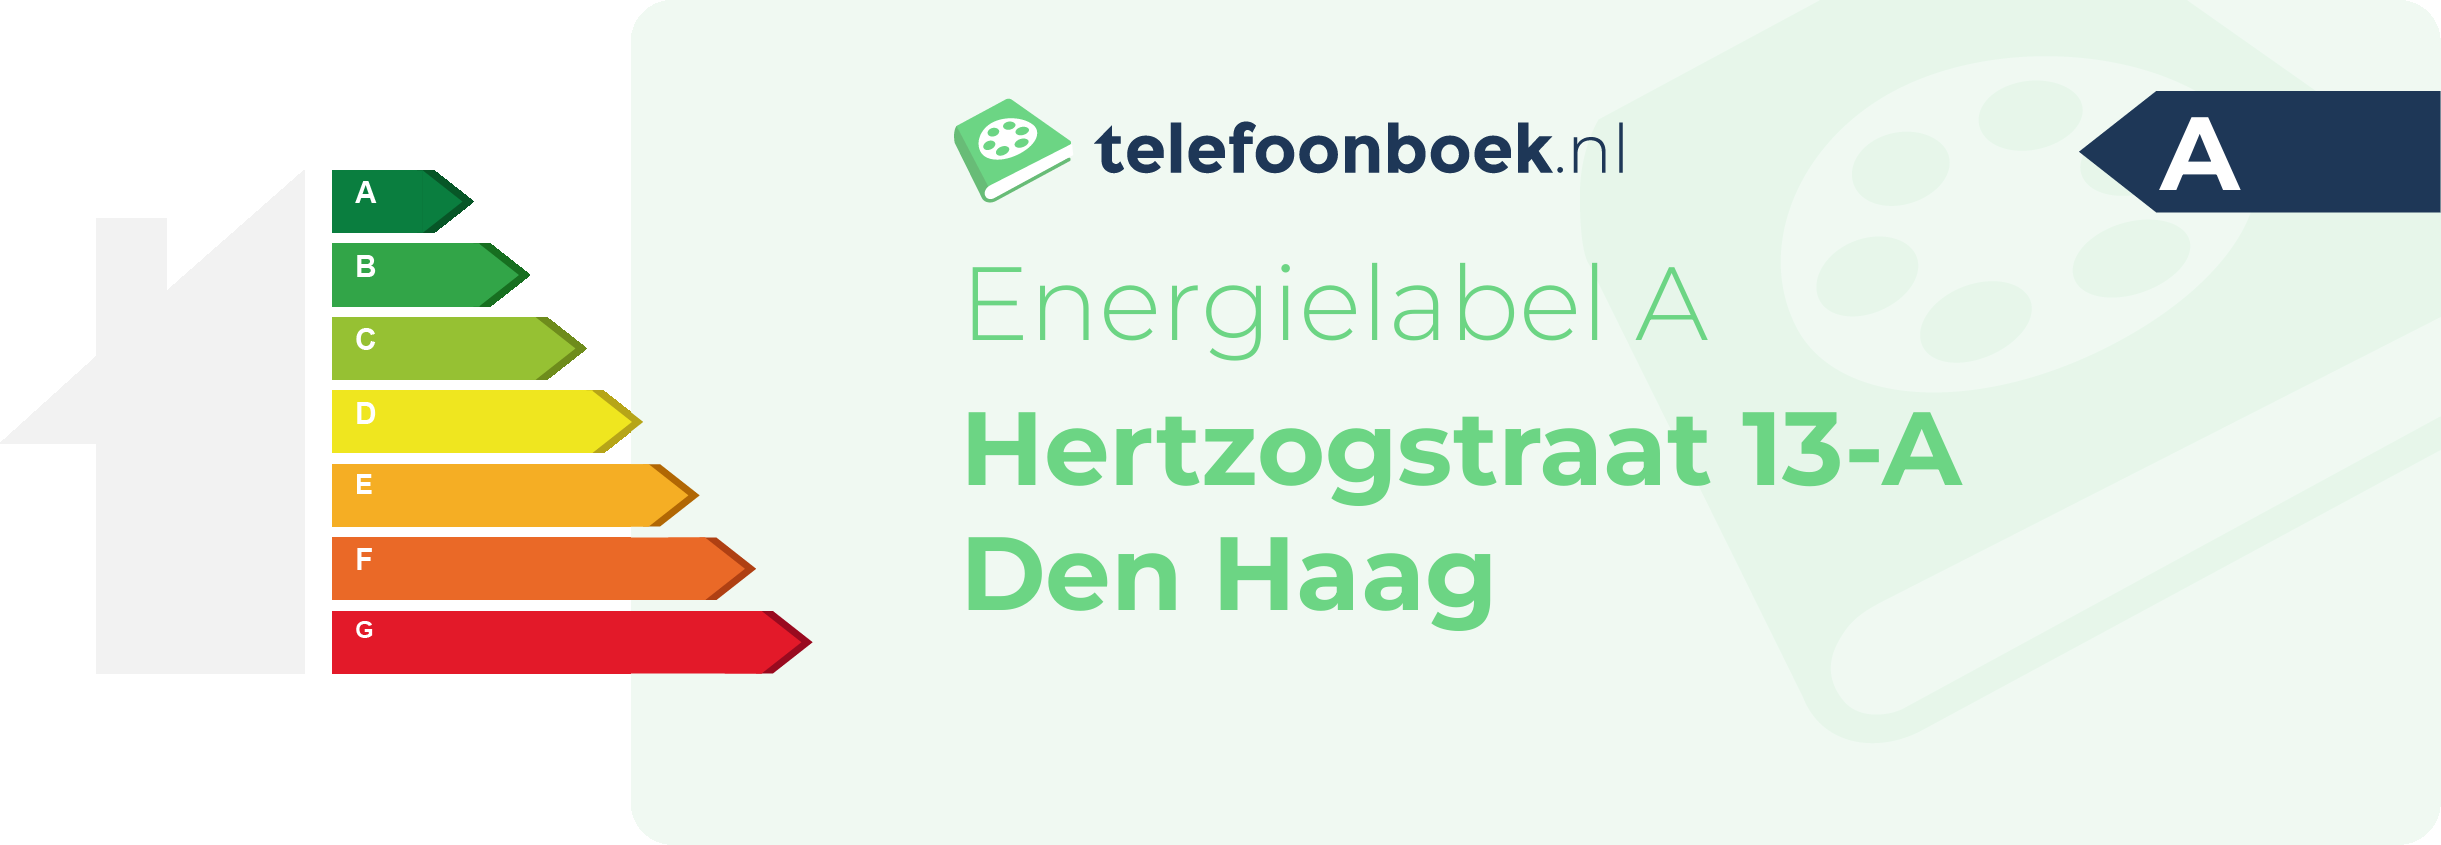 Energielabel Hertzogstraat 13-A Den Haag